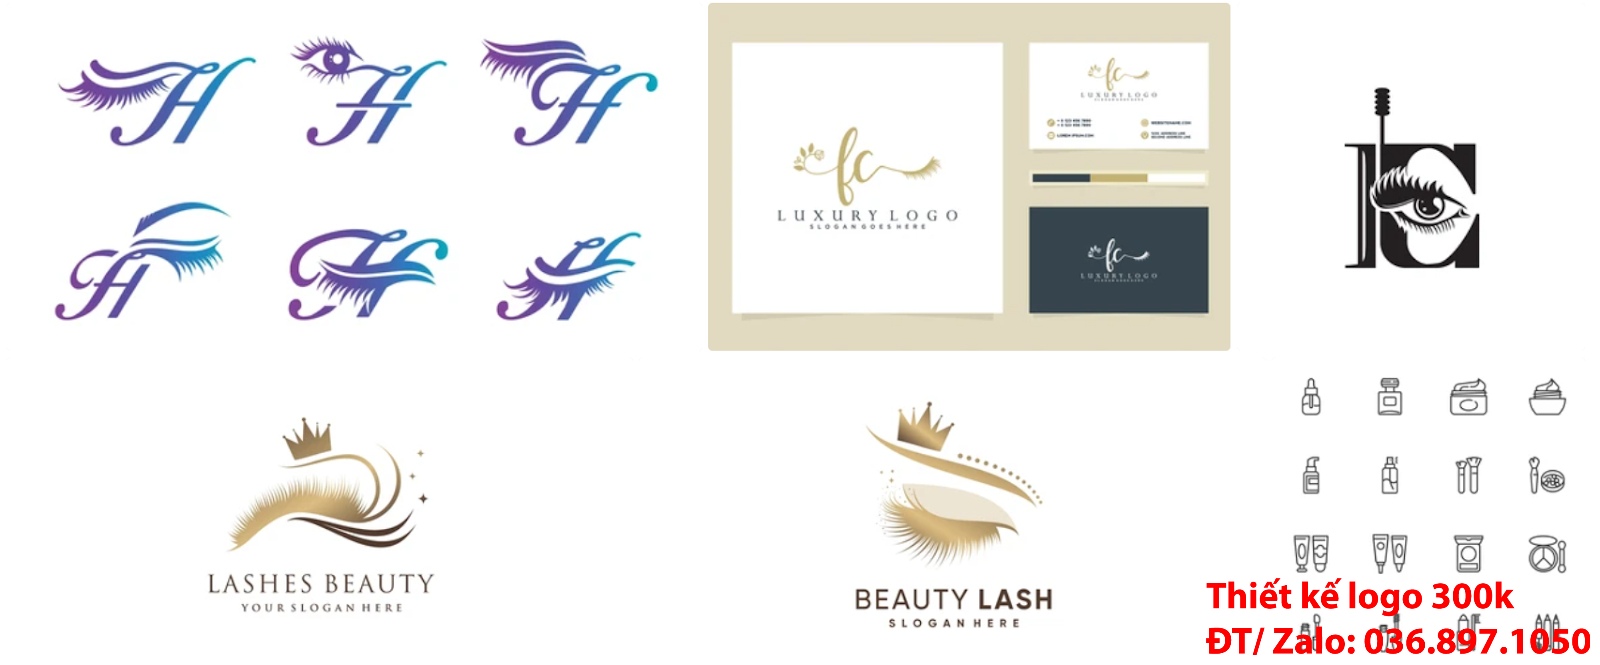 Công ty cung cấp dịch vụ tạo Mẫu logo thẩm mỹ lông mi mắt đơn giản tinh tế giá rẻ uy tín chất lượng 500k